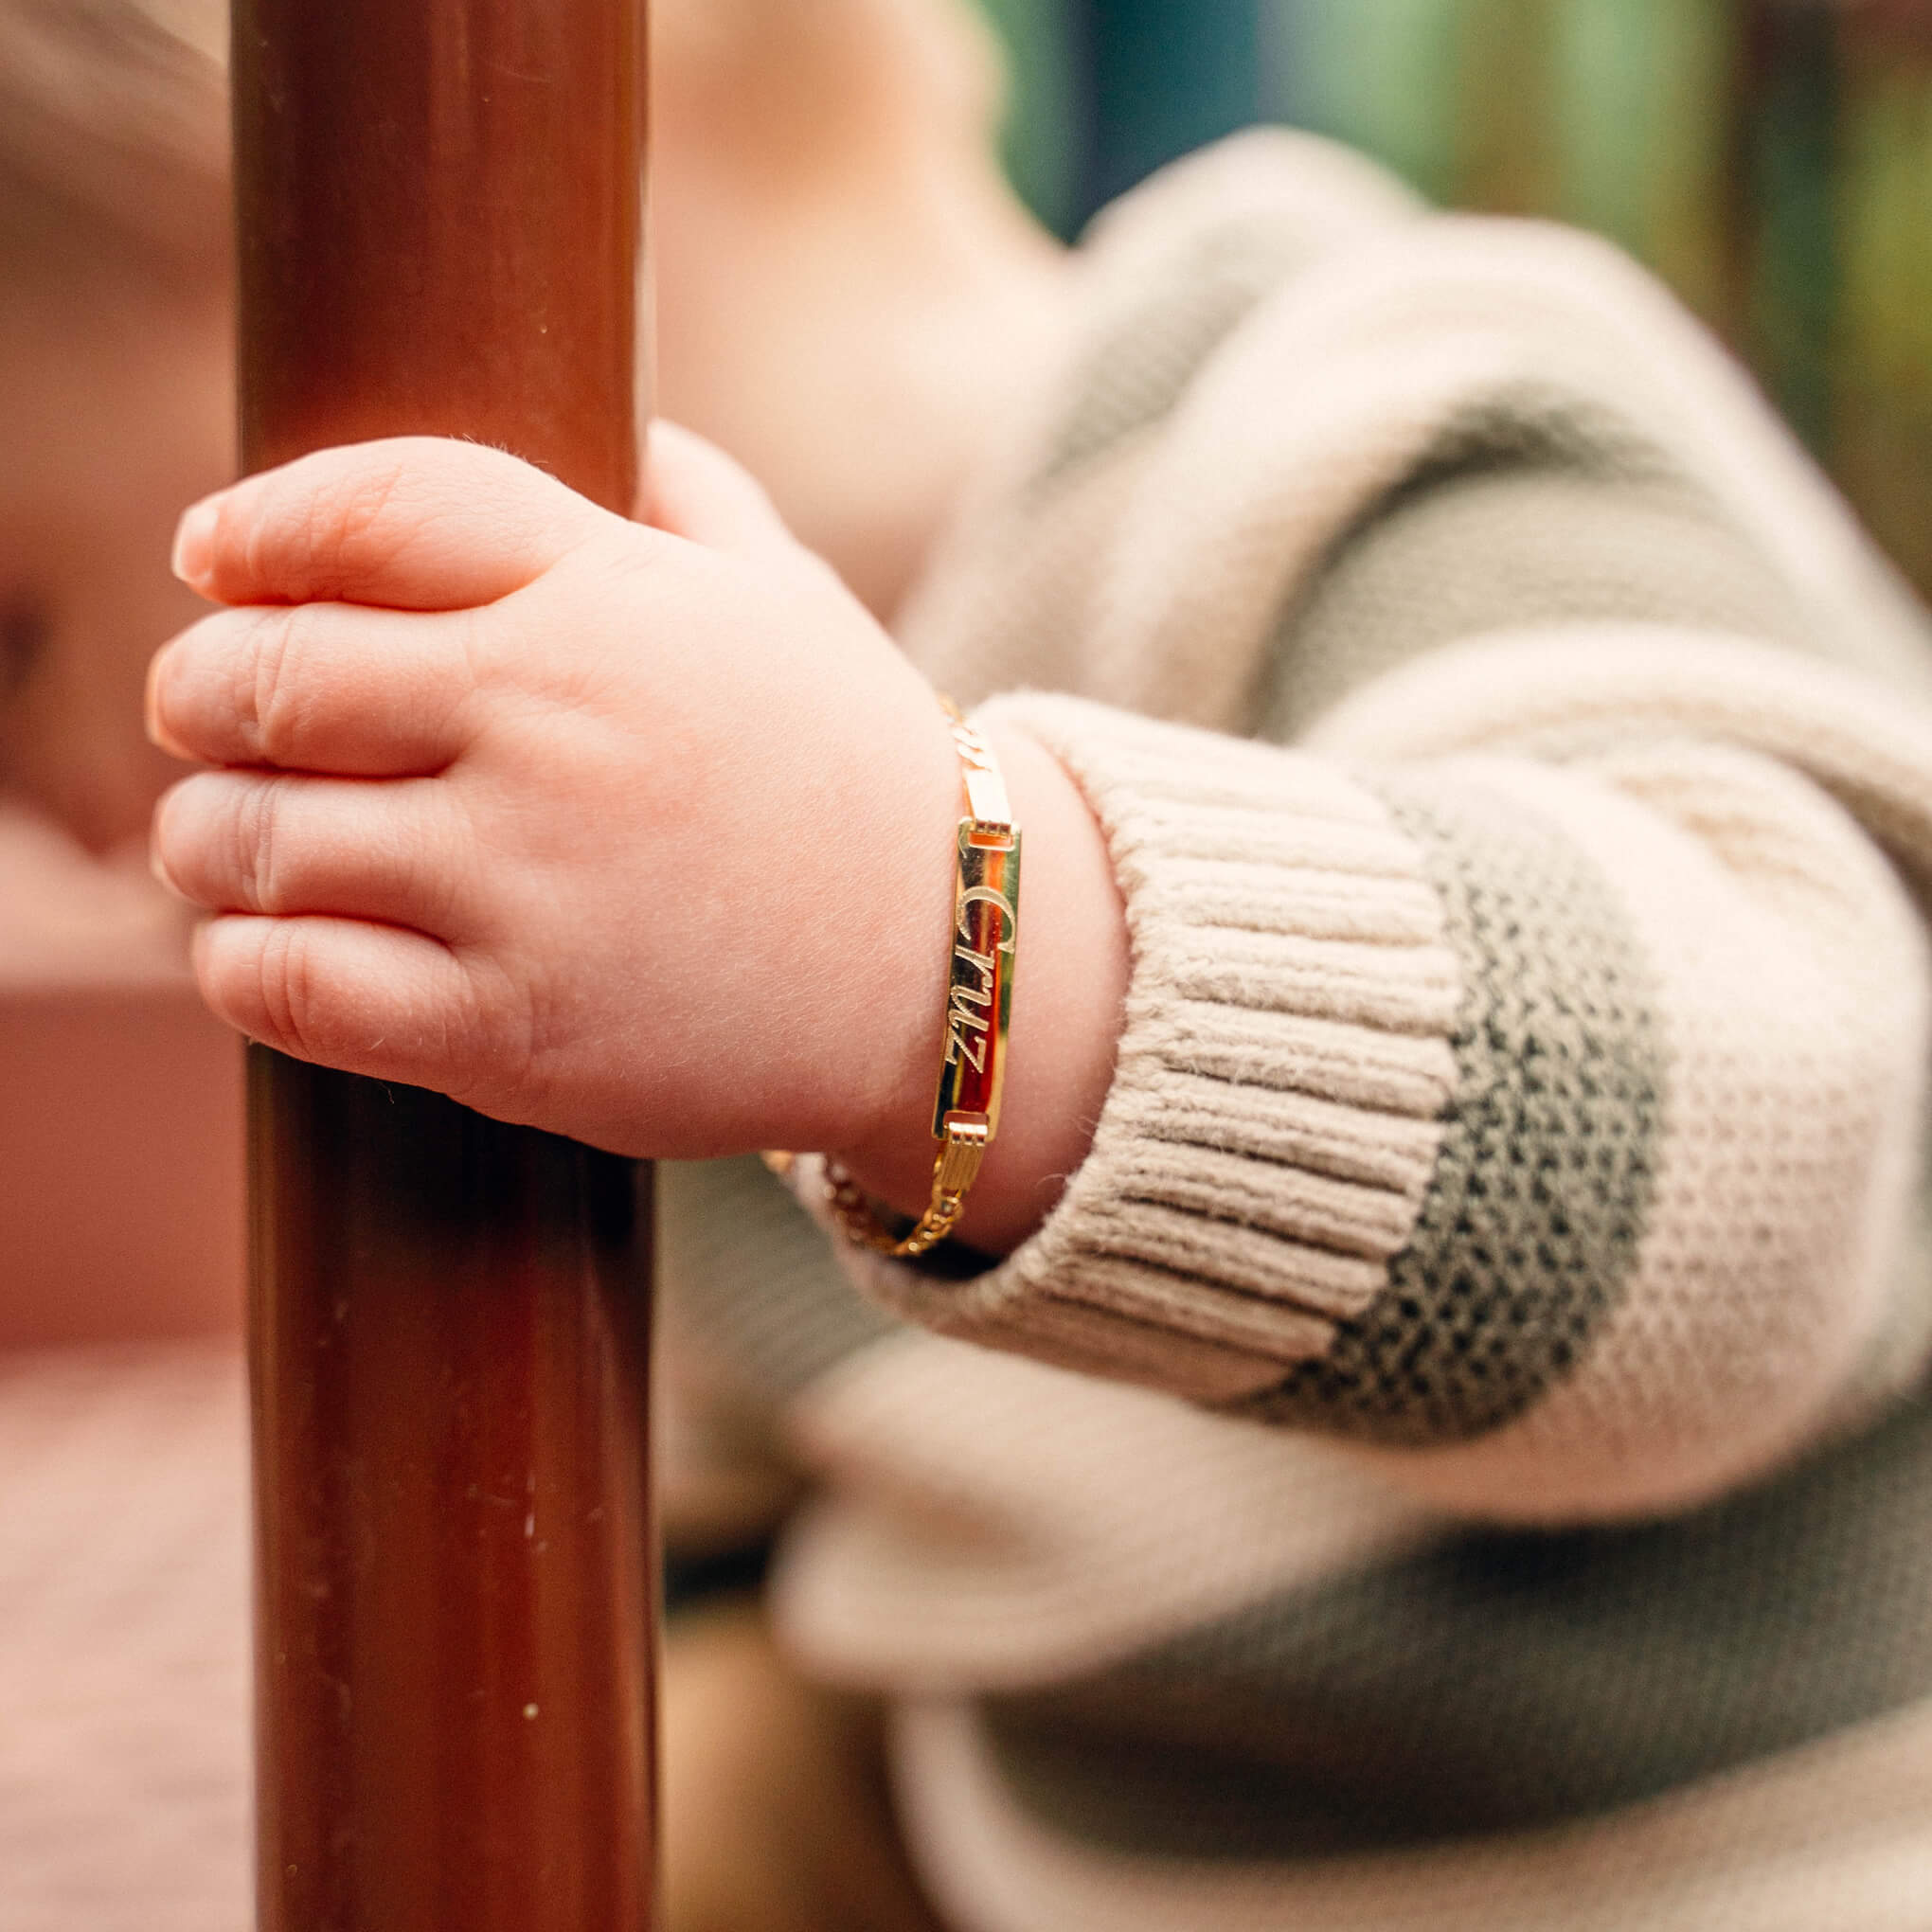 14K Gold Charm Bracelet, Design Your Own Baby/Children's Link Chain Bracelet for Girls - 14K Gold